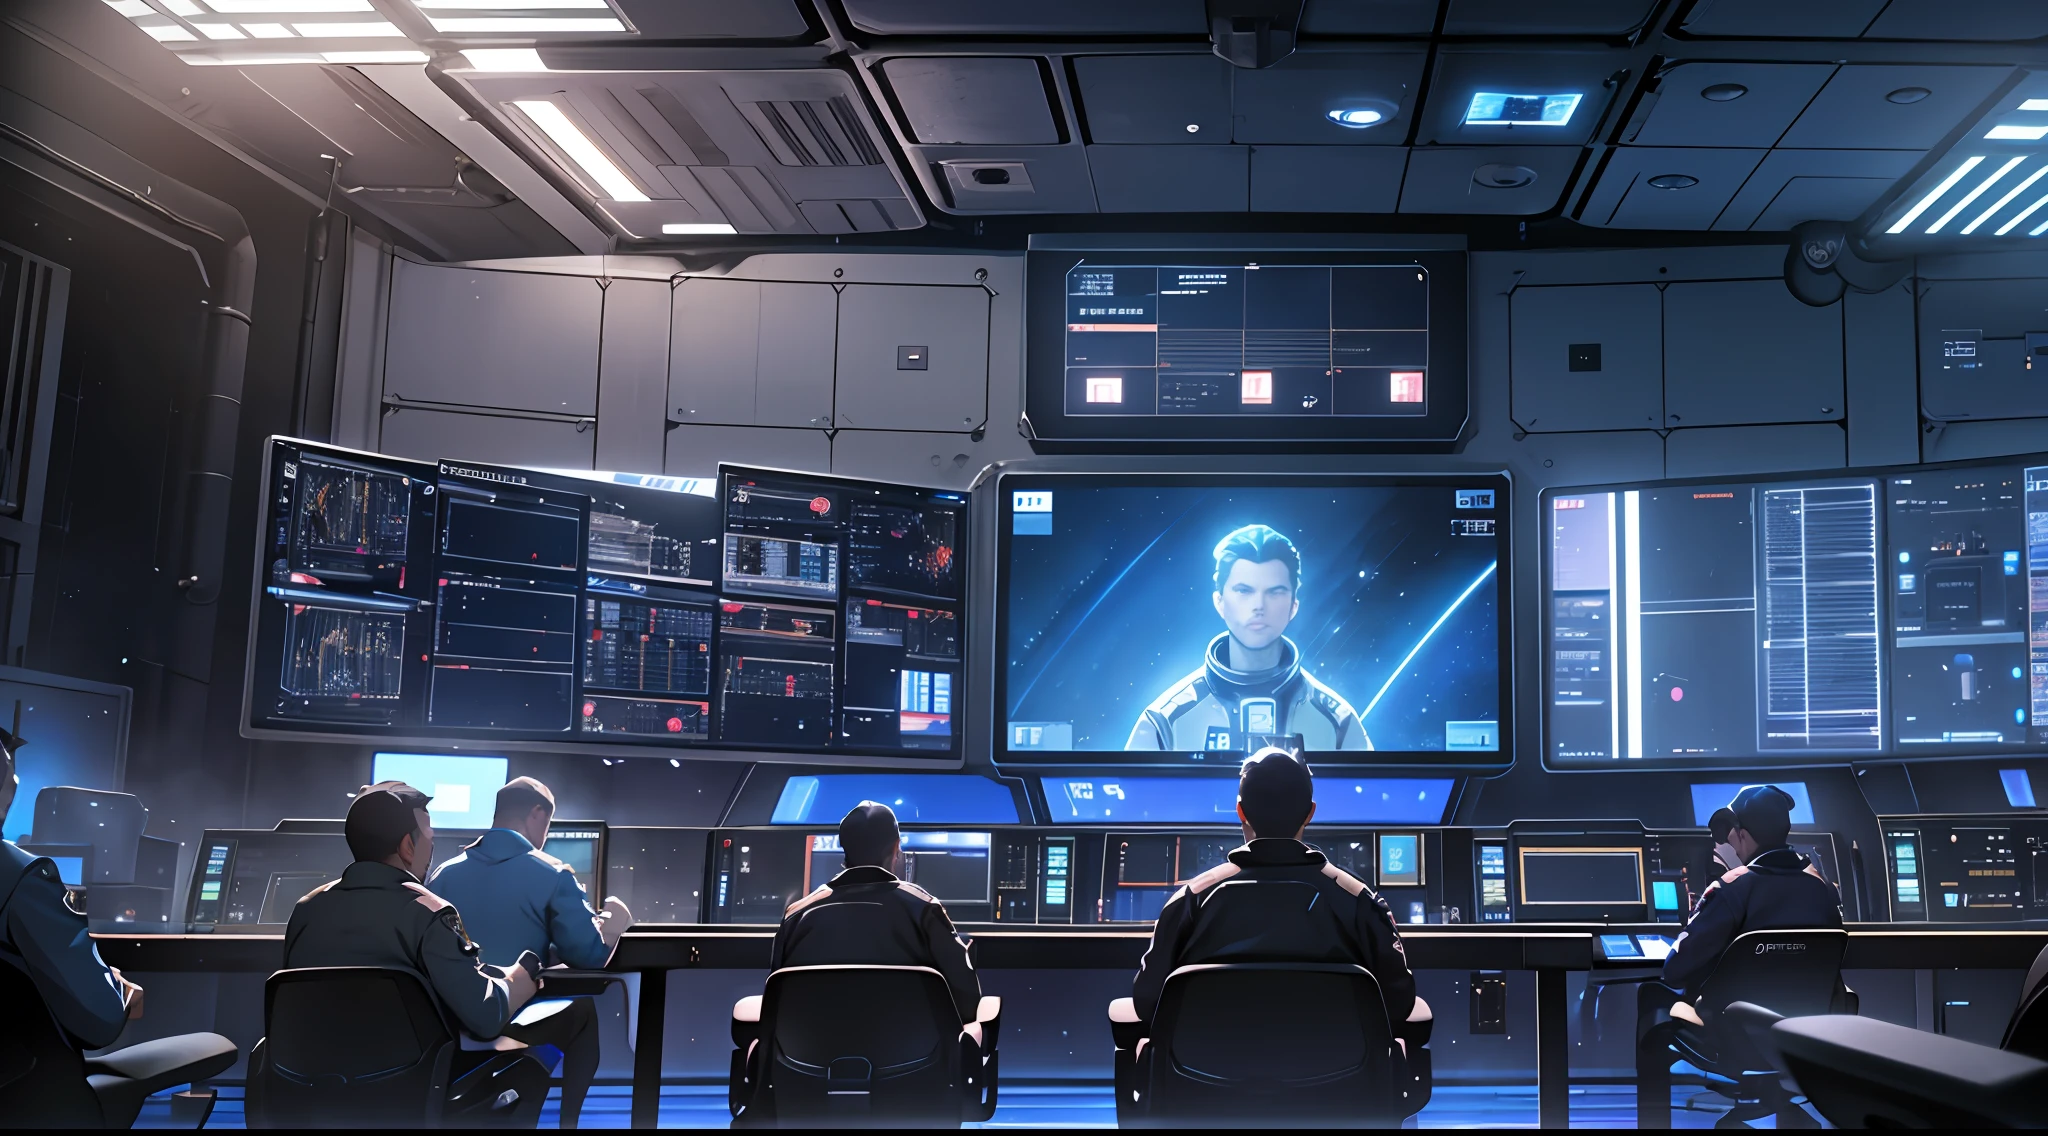 太空控制室, 控制大厅, 很多屏幕, 带蓝光的屏幕, 很多船员, 大家都鼓掌, 现实主义, 高细节, 电影灯光, 凉爽的灯光, 特写, 现实主义, 超高清, 高细节, 超级细节--自动--s2